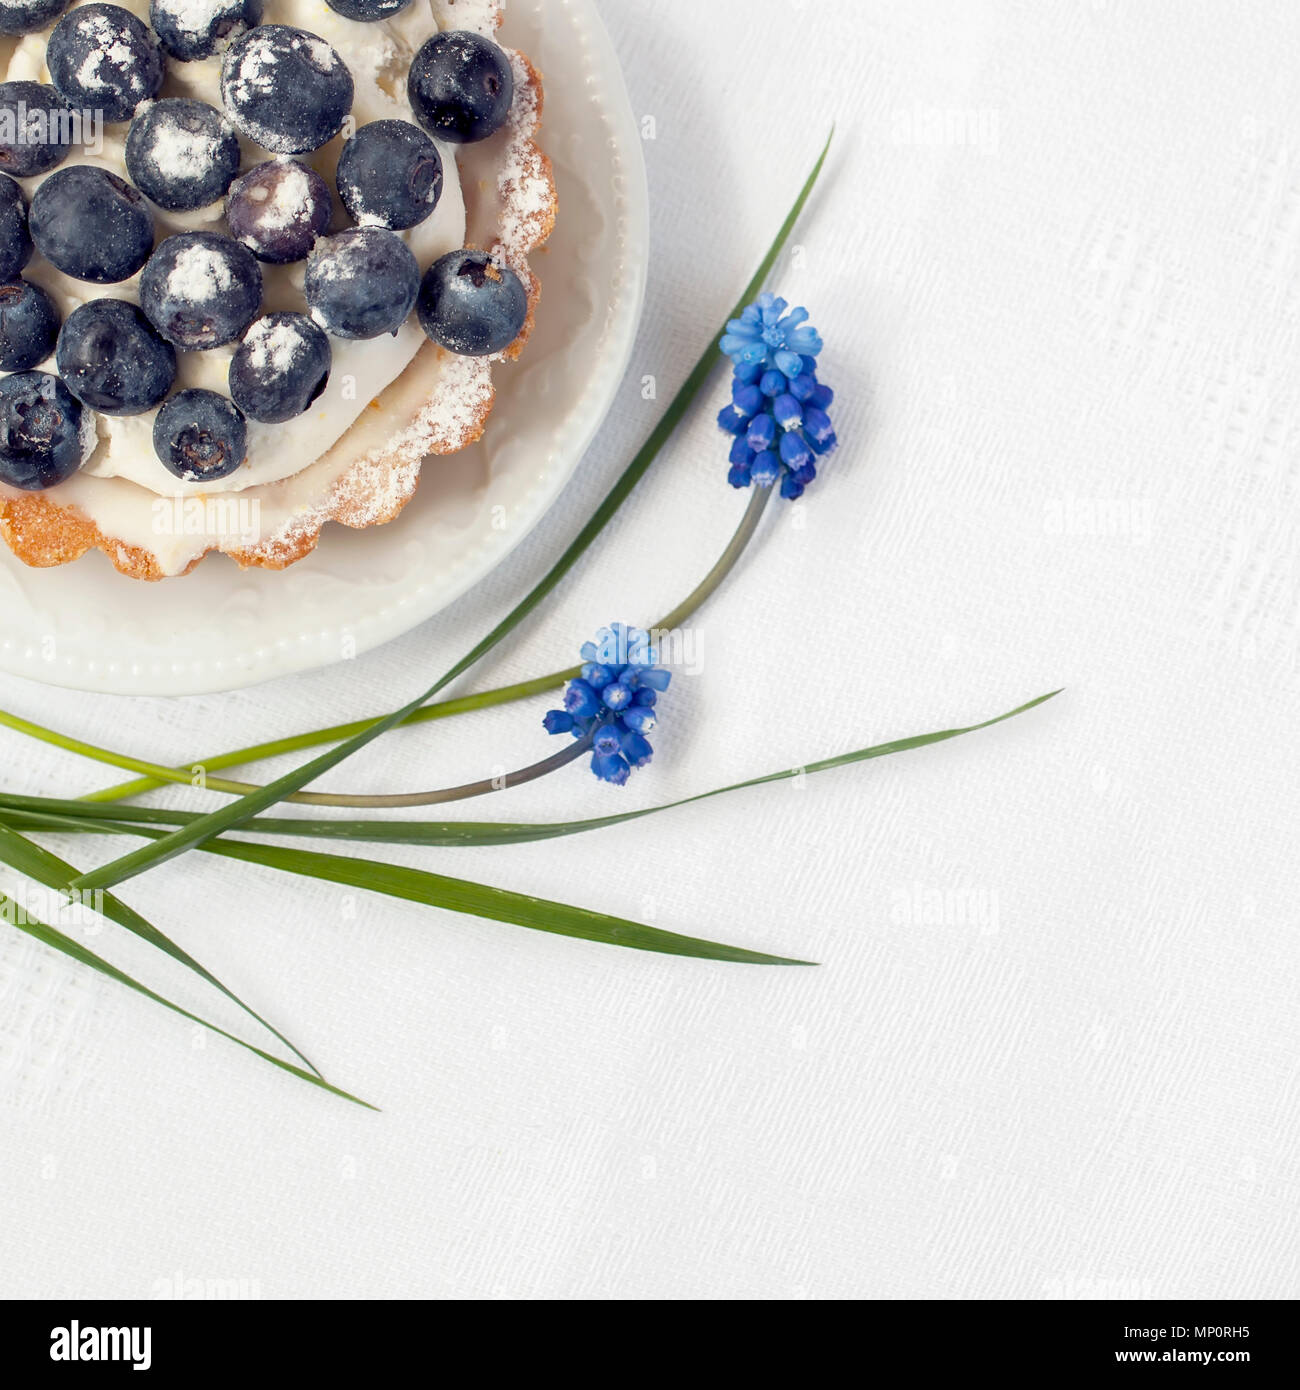 Frische Blueberry Pie mit Vanillepudding in Teil Platte close-up, neben eleganten blauen Blumen,, weiß Serviette. Lecker und gesund Sommer berry Dessert, Kopie Raum Stockfoto